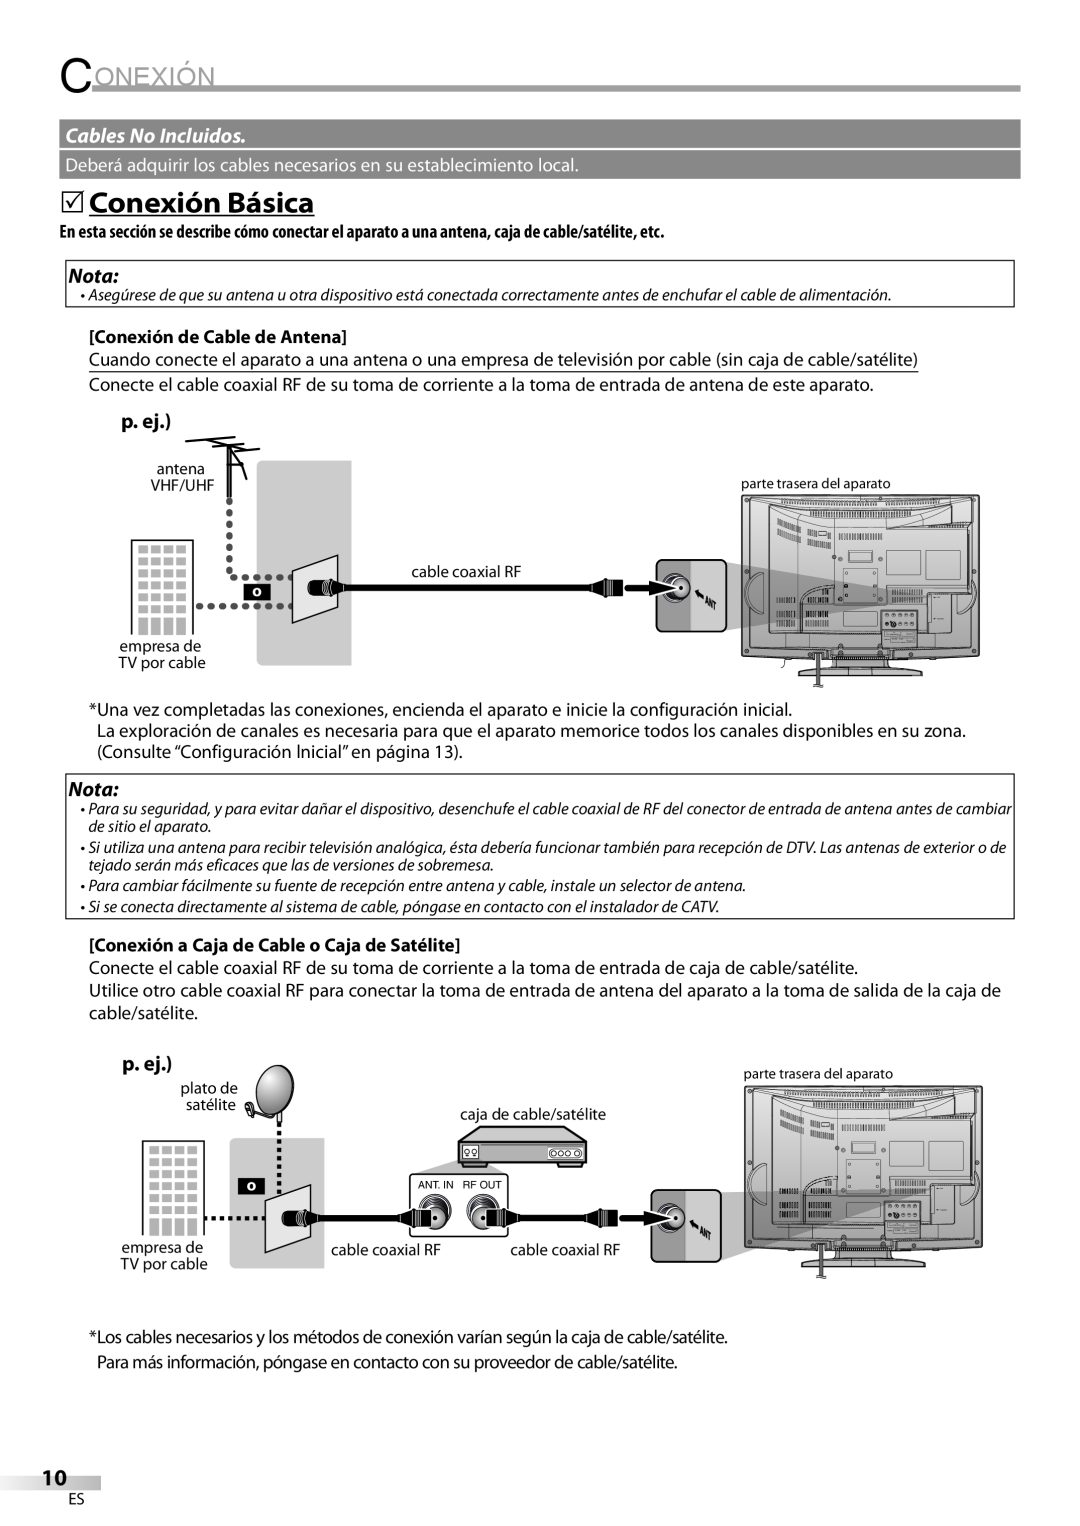 Sylvania LD200SL8 owner manual 5Conexión Básica, Cables No Incluidos, Nota, Conexión de Cable de Antena 